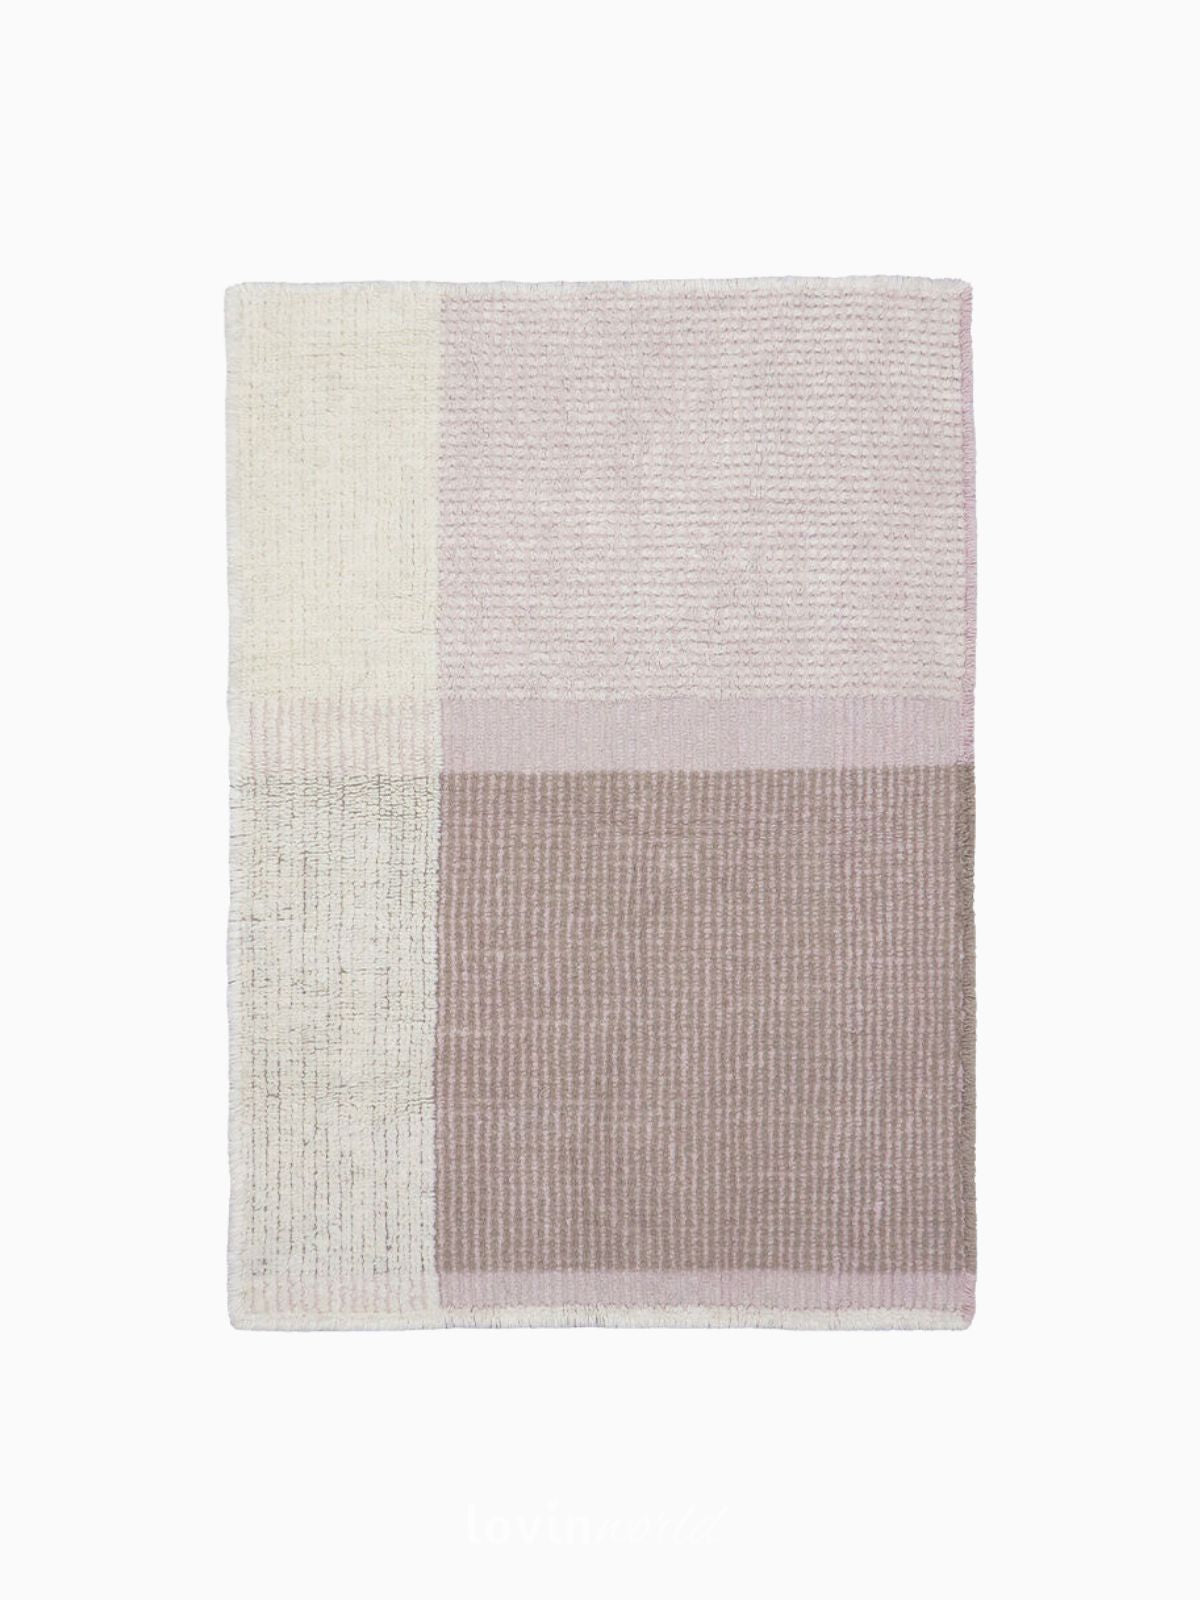 Tappeto lavabile Kaya in lana, colore rosa 120x170 cm.-1